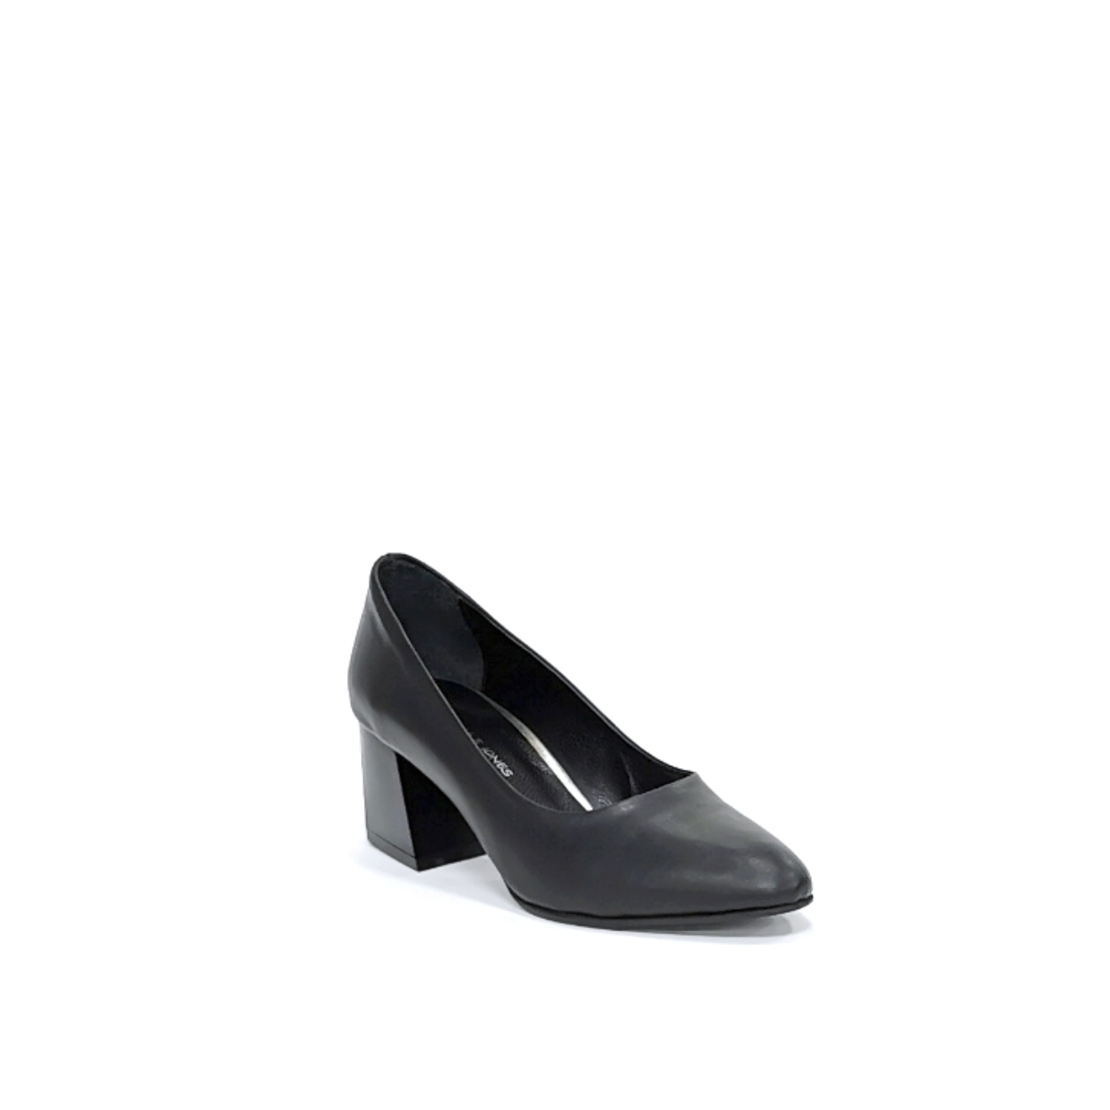 Женские элегантные туфли из натуральной кожи черного цвета/7850